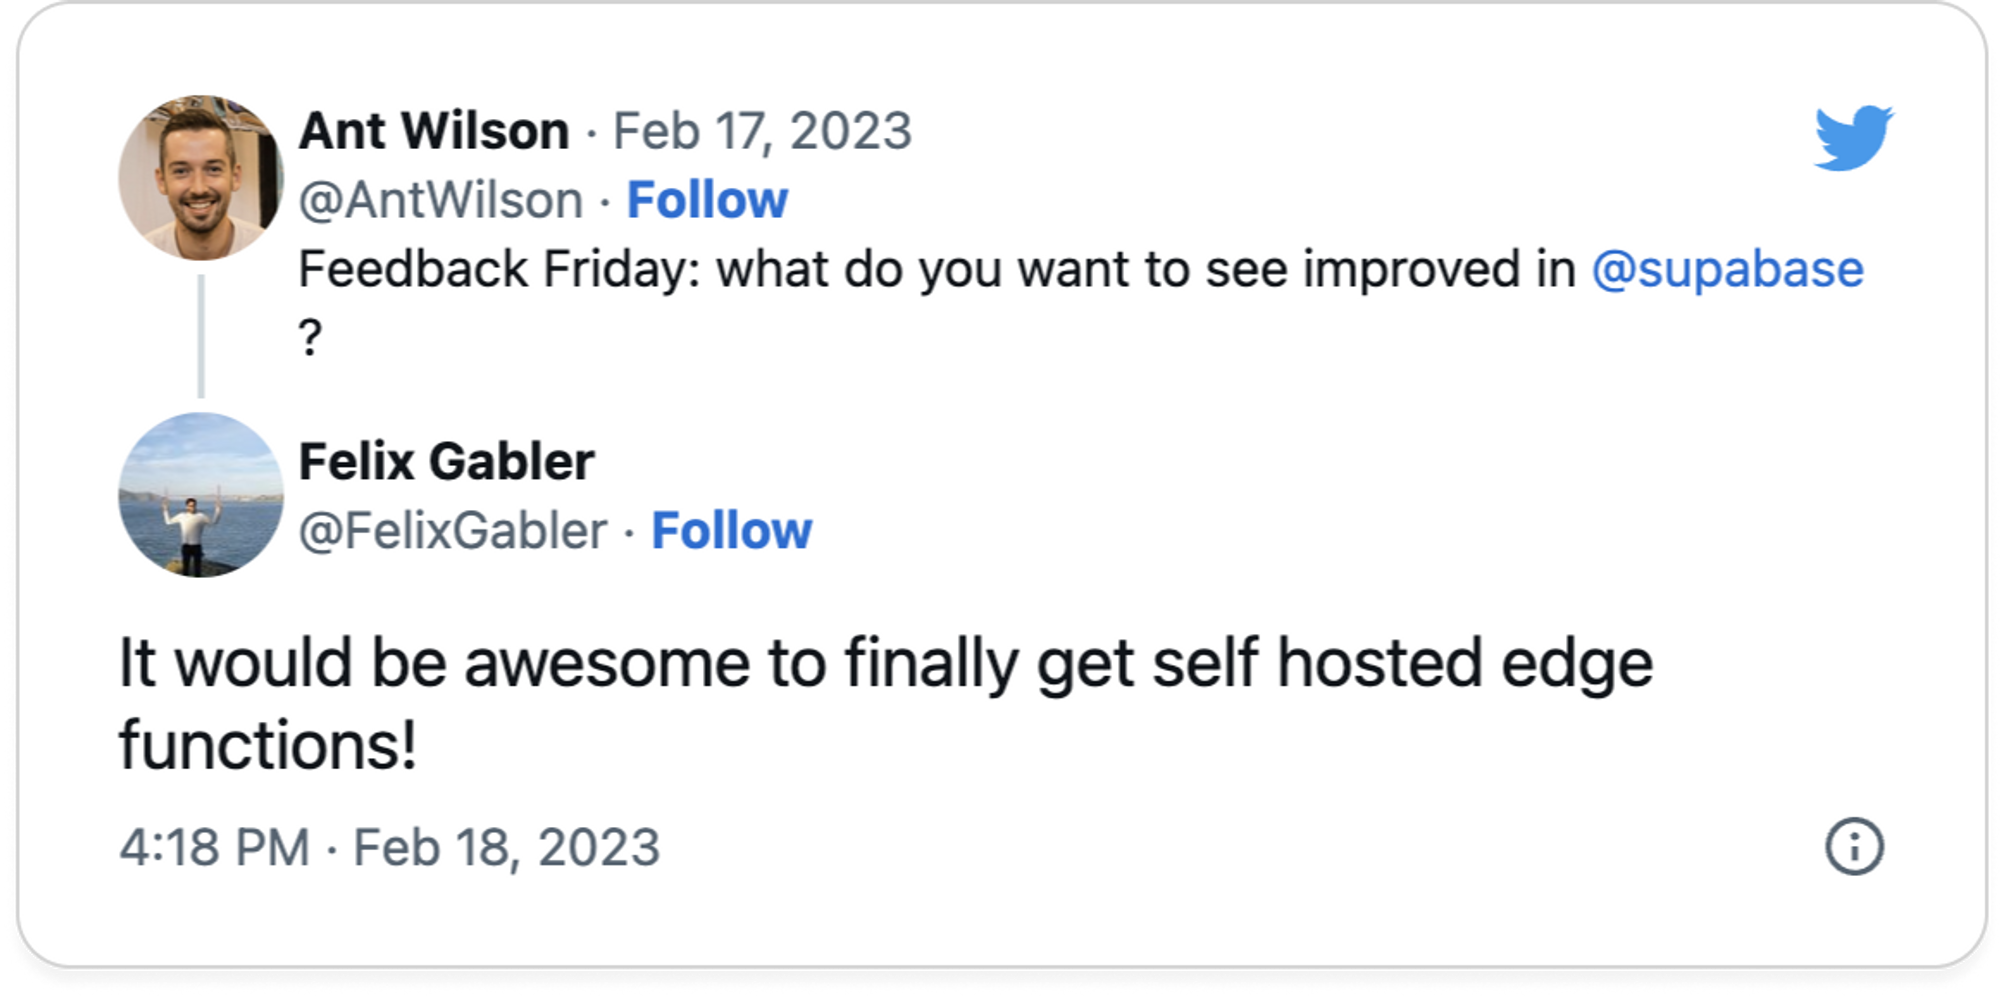 Self-hosted functions tweet